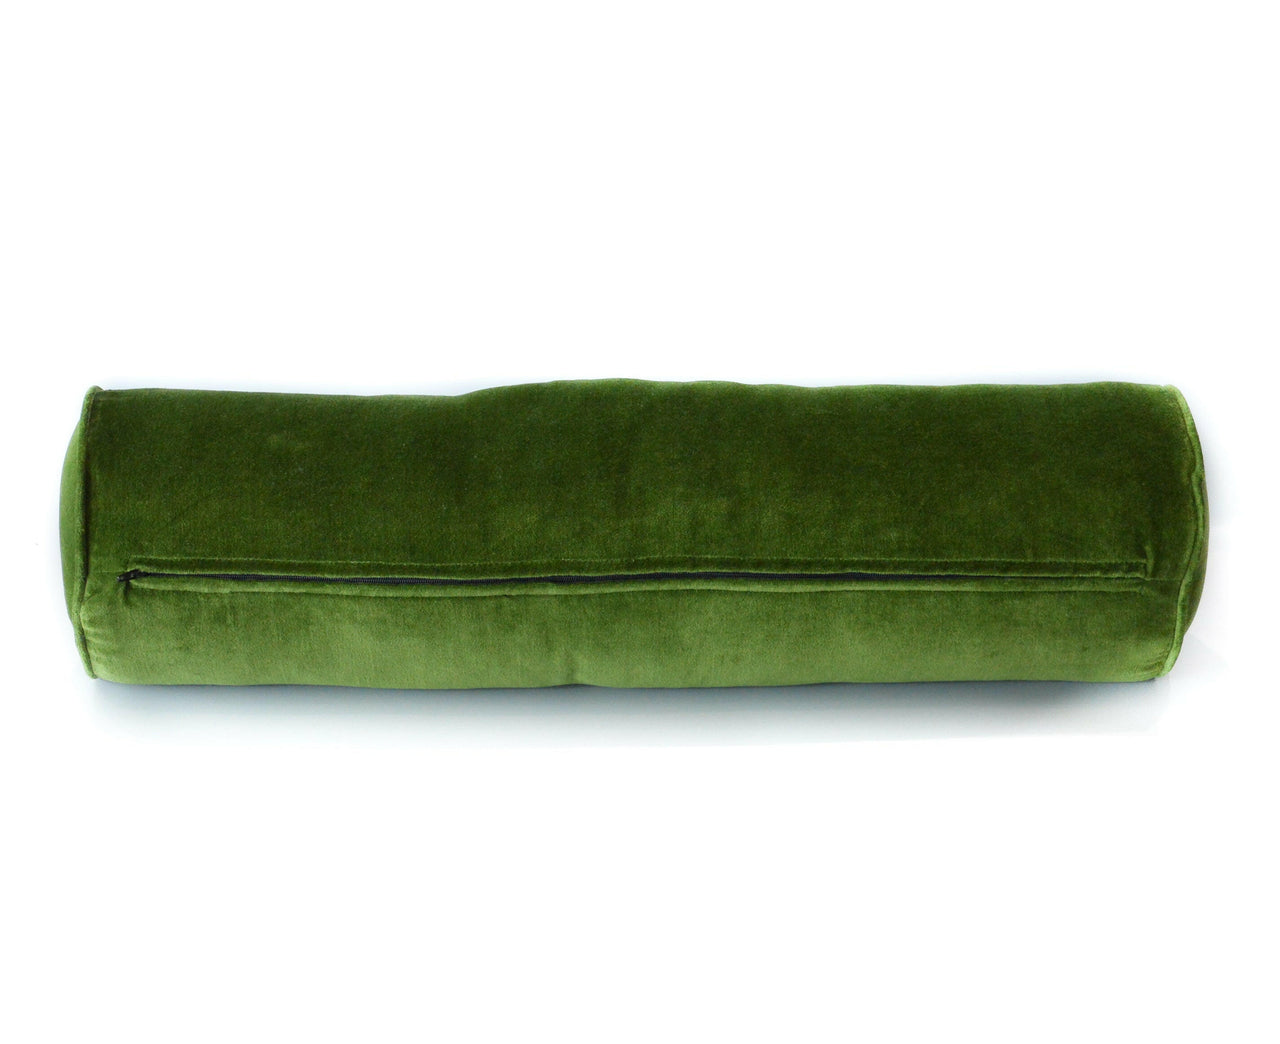 Moss green Velvet Bolster Cover.